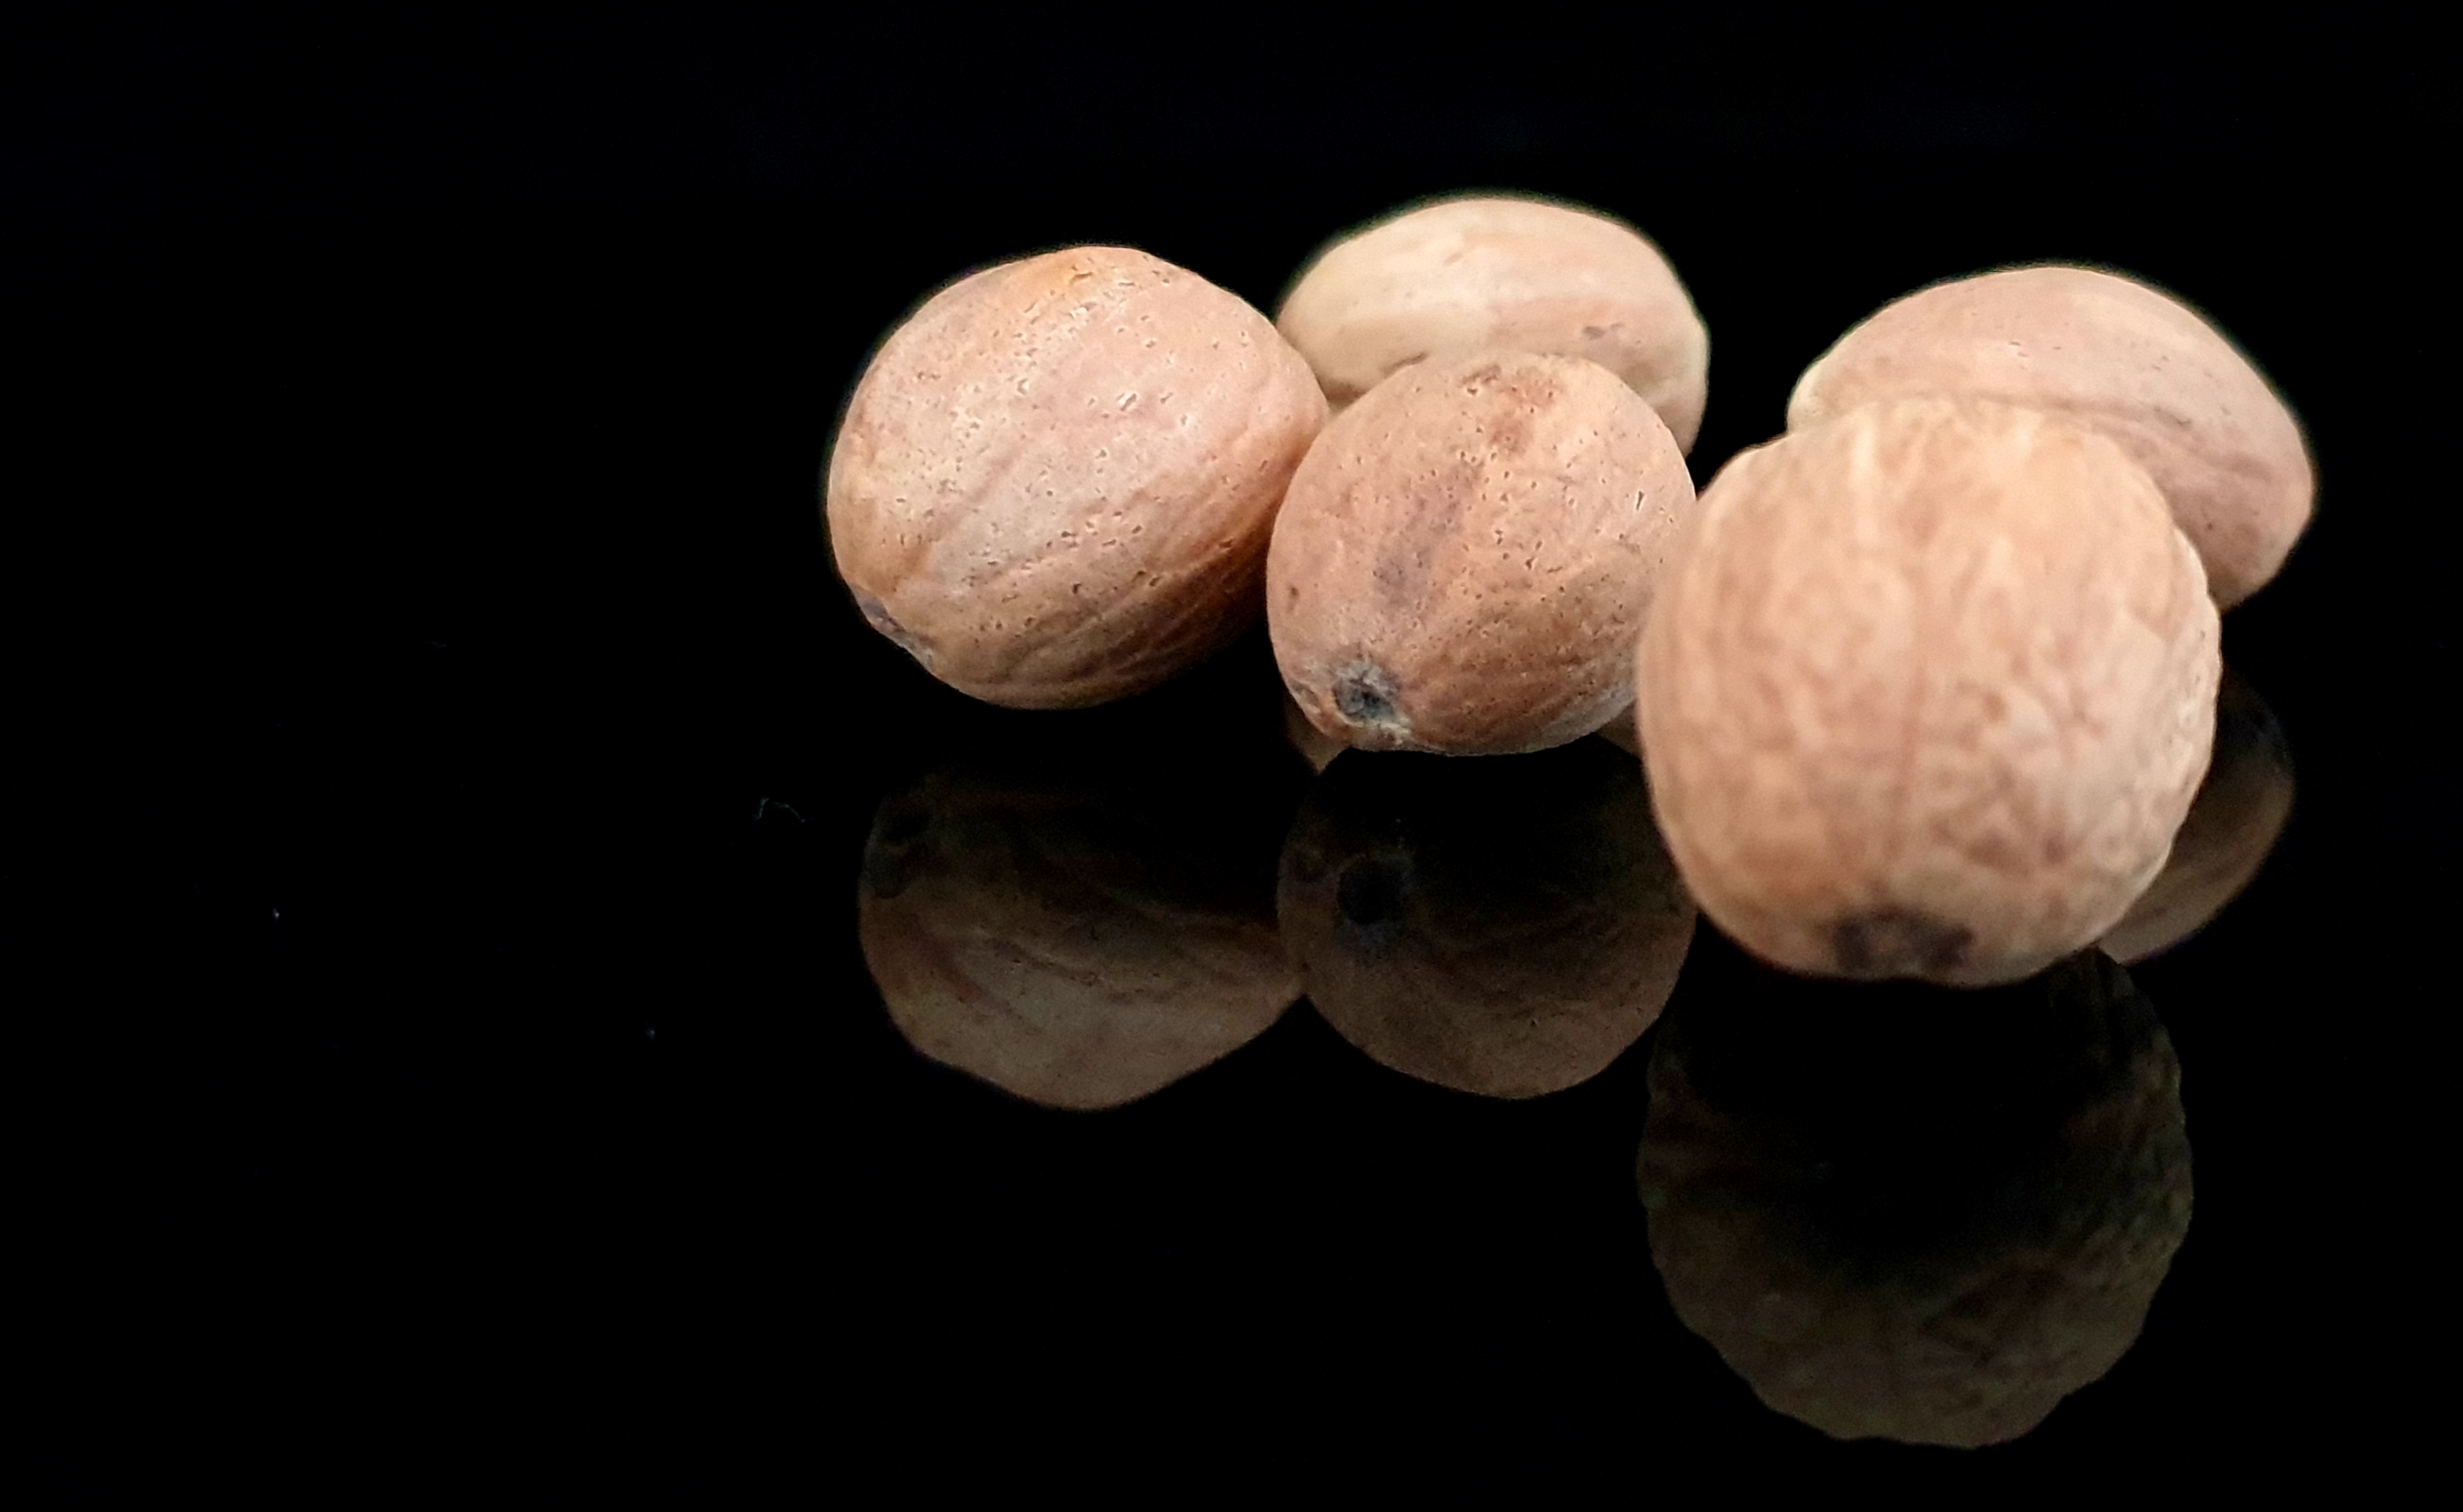 La noix de muscade est reconnue en cuisine mais aussi pour ses vertus